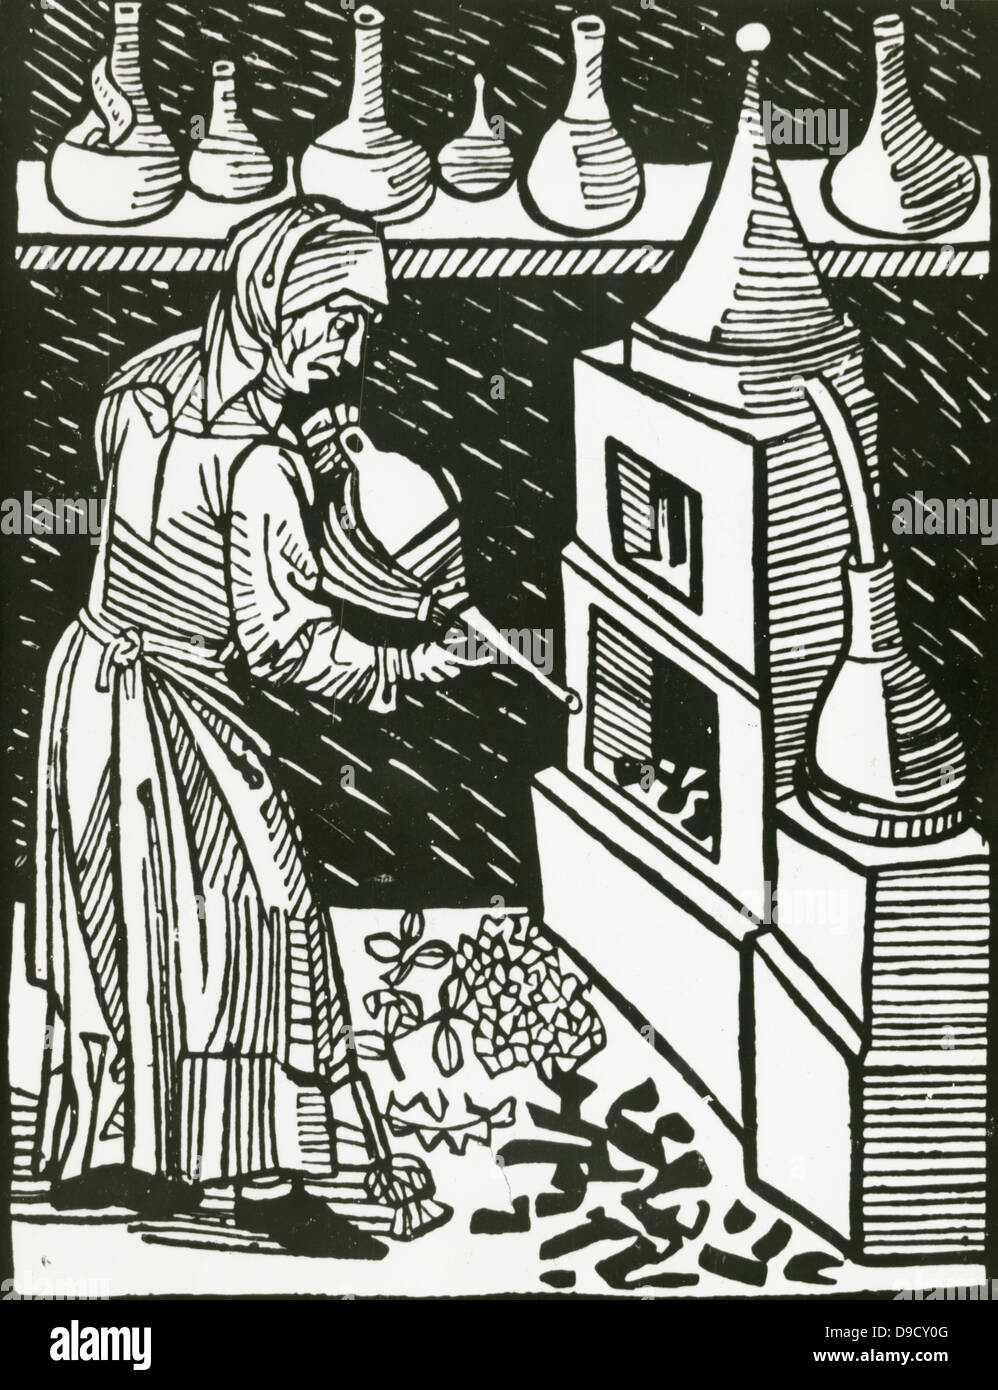 L'application de l'opérateur des soufflets à la four pendant la distillation. Gravure sur bois, 1514. Banque D'Images